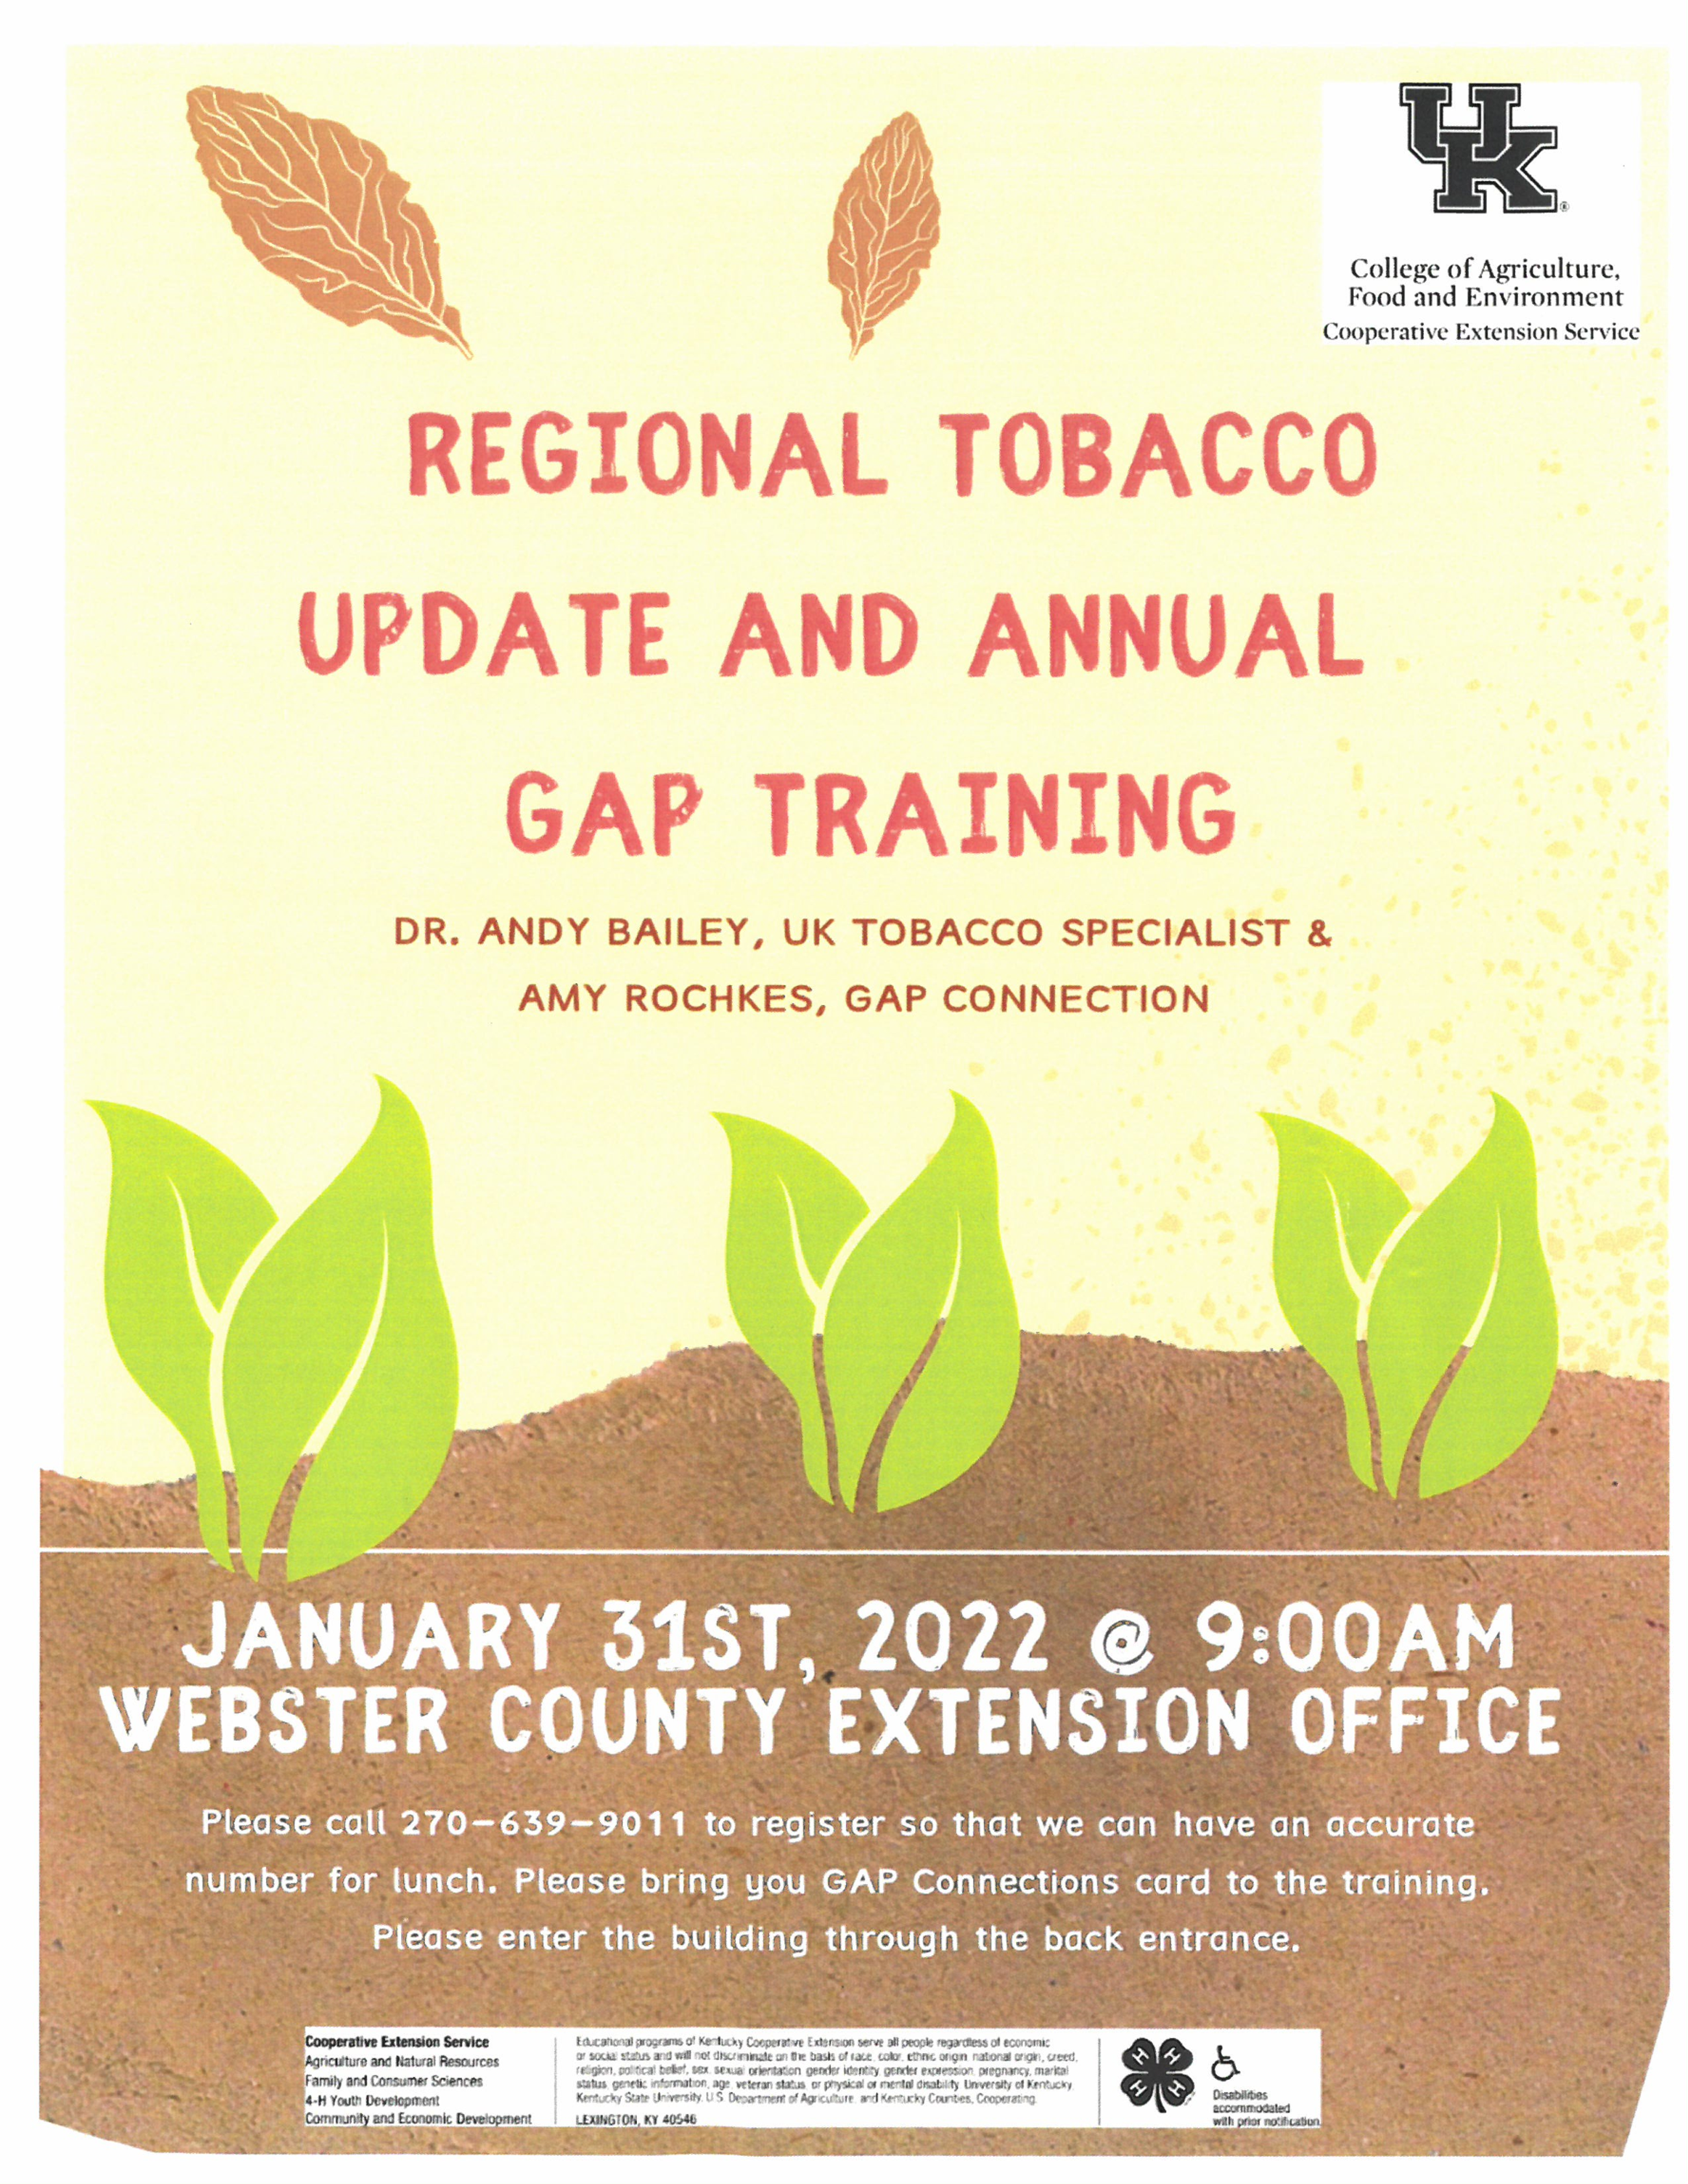 Reginal Tobacco Update and Annual Gap Training